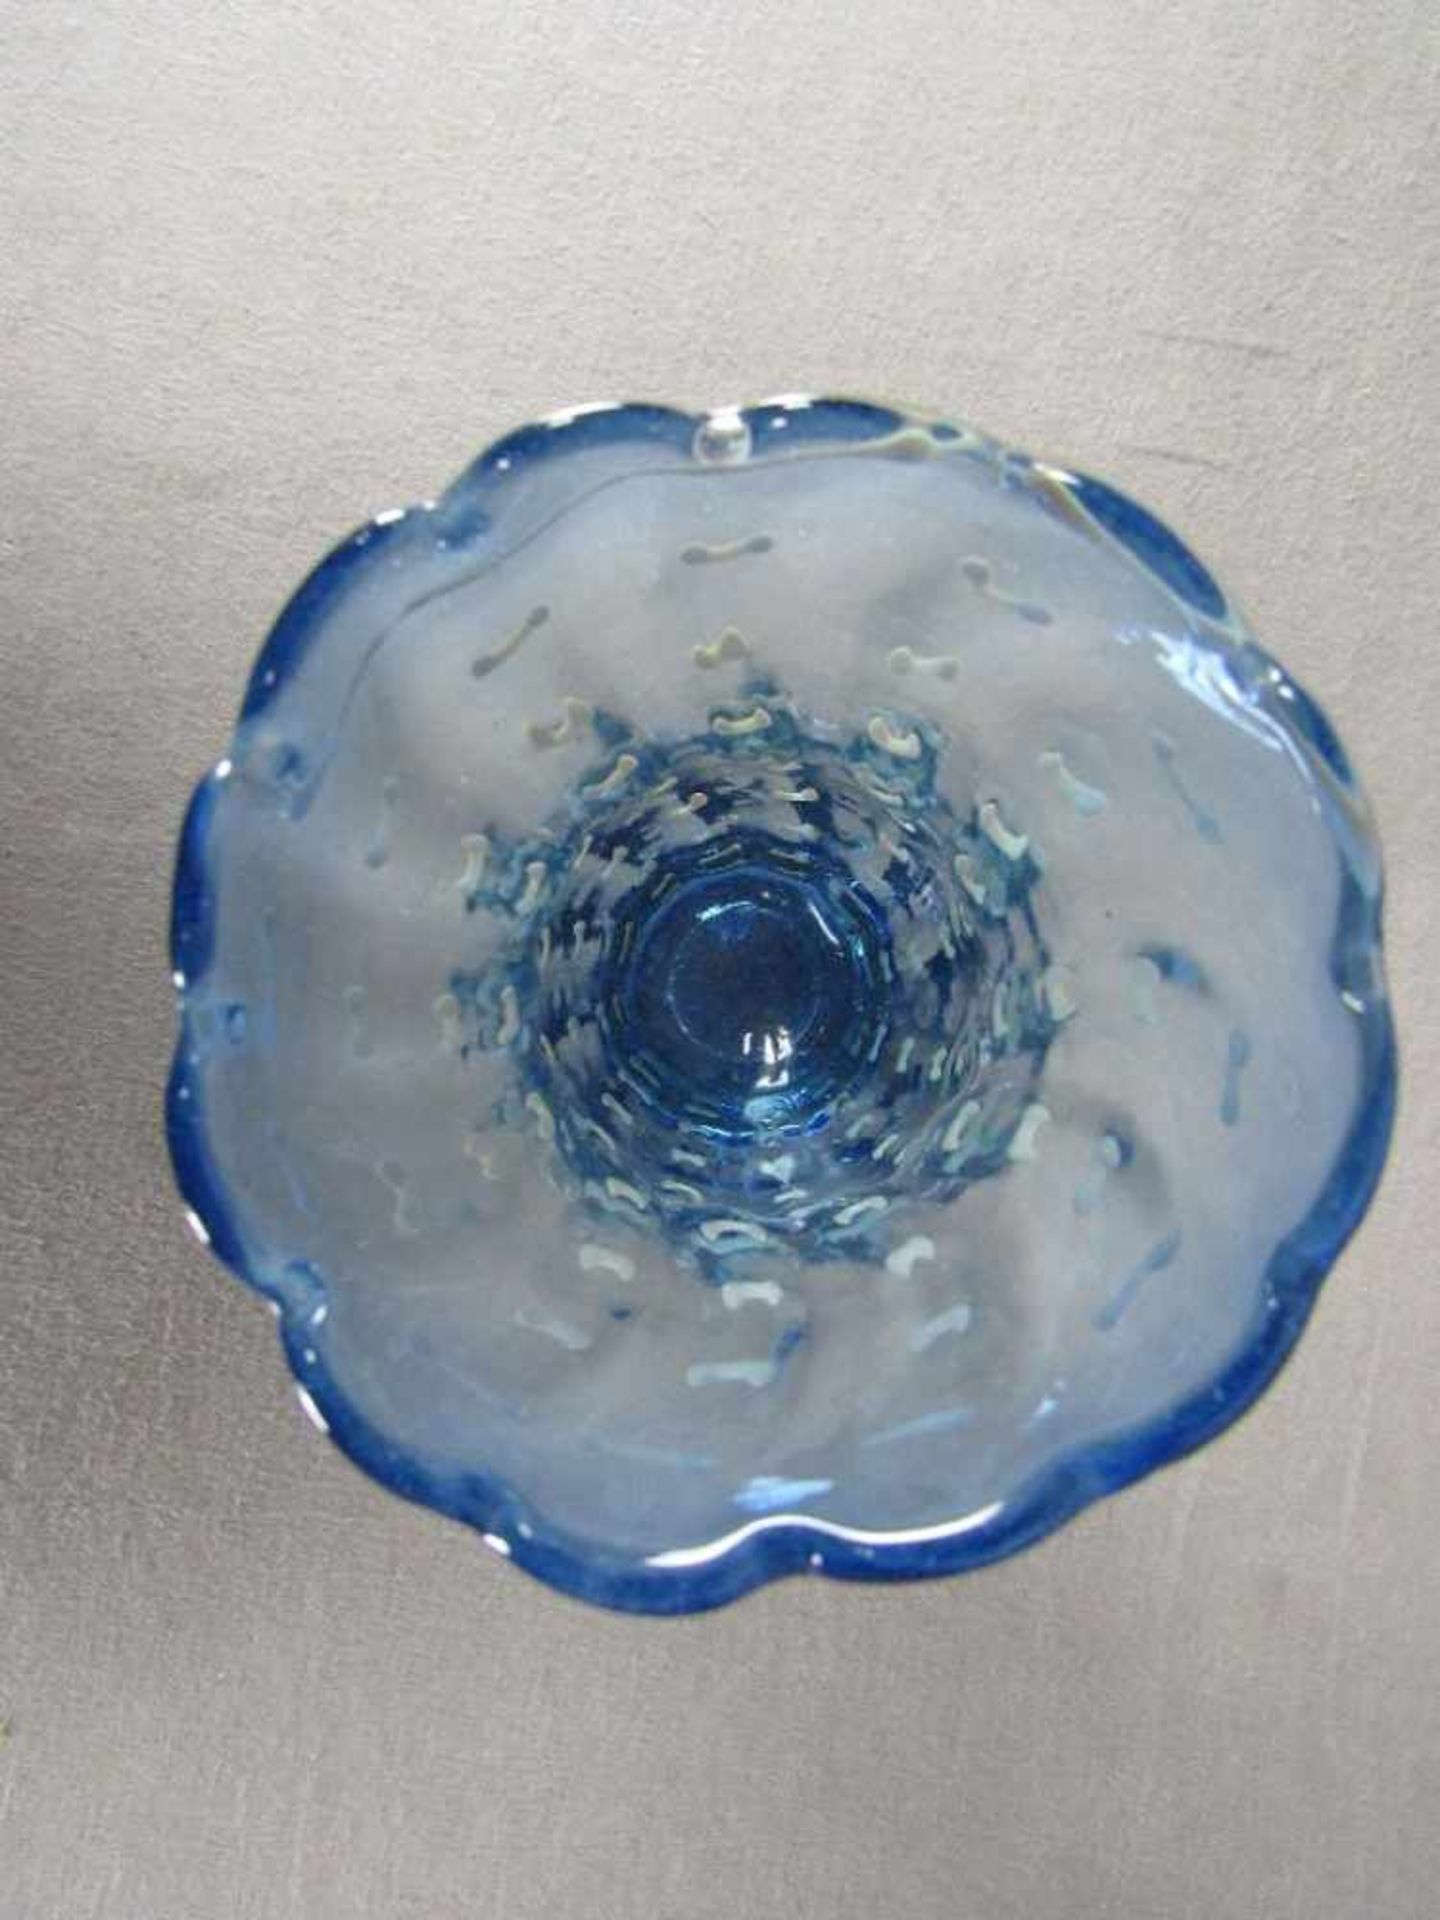 Blaue Glasvase mit beigen Flecken 26cm hoch - Image 3 of 4